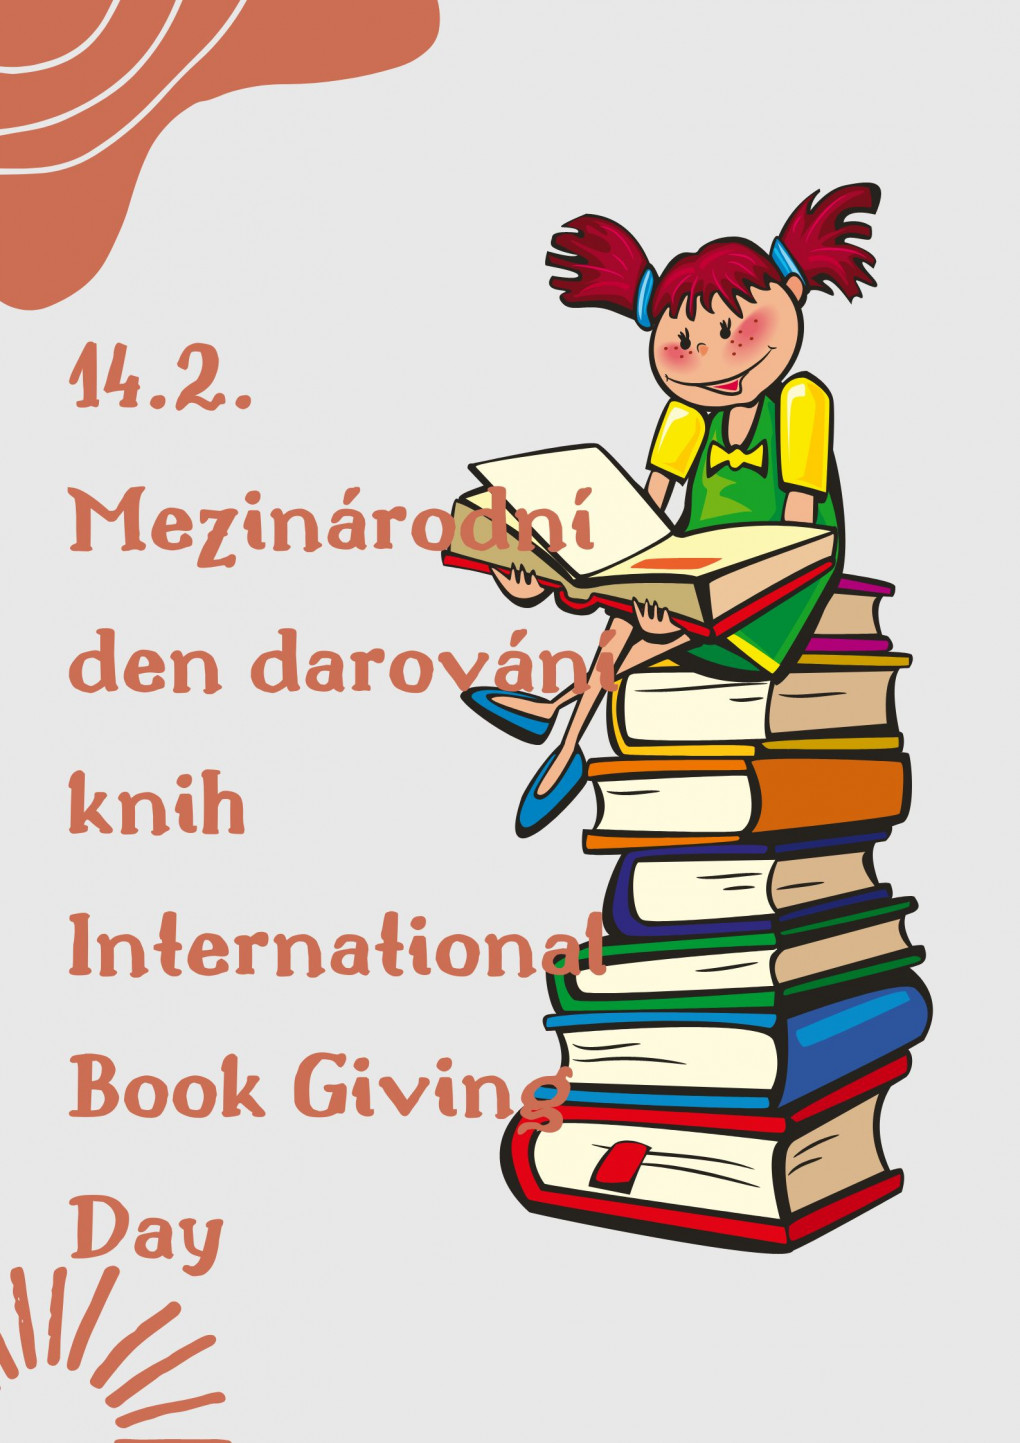 14_2_mezinarodni_den_darovani_knih_international_book_giving_day.jpg